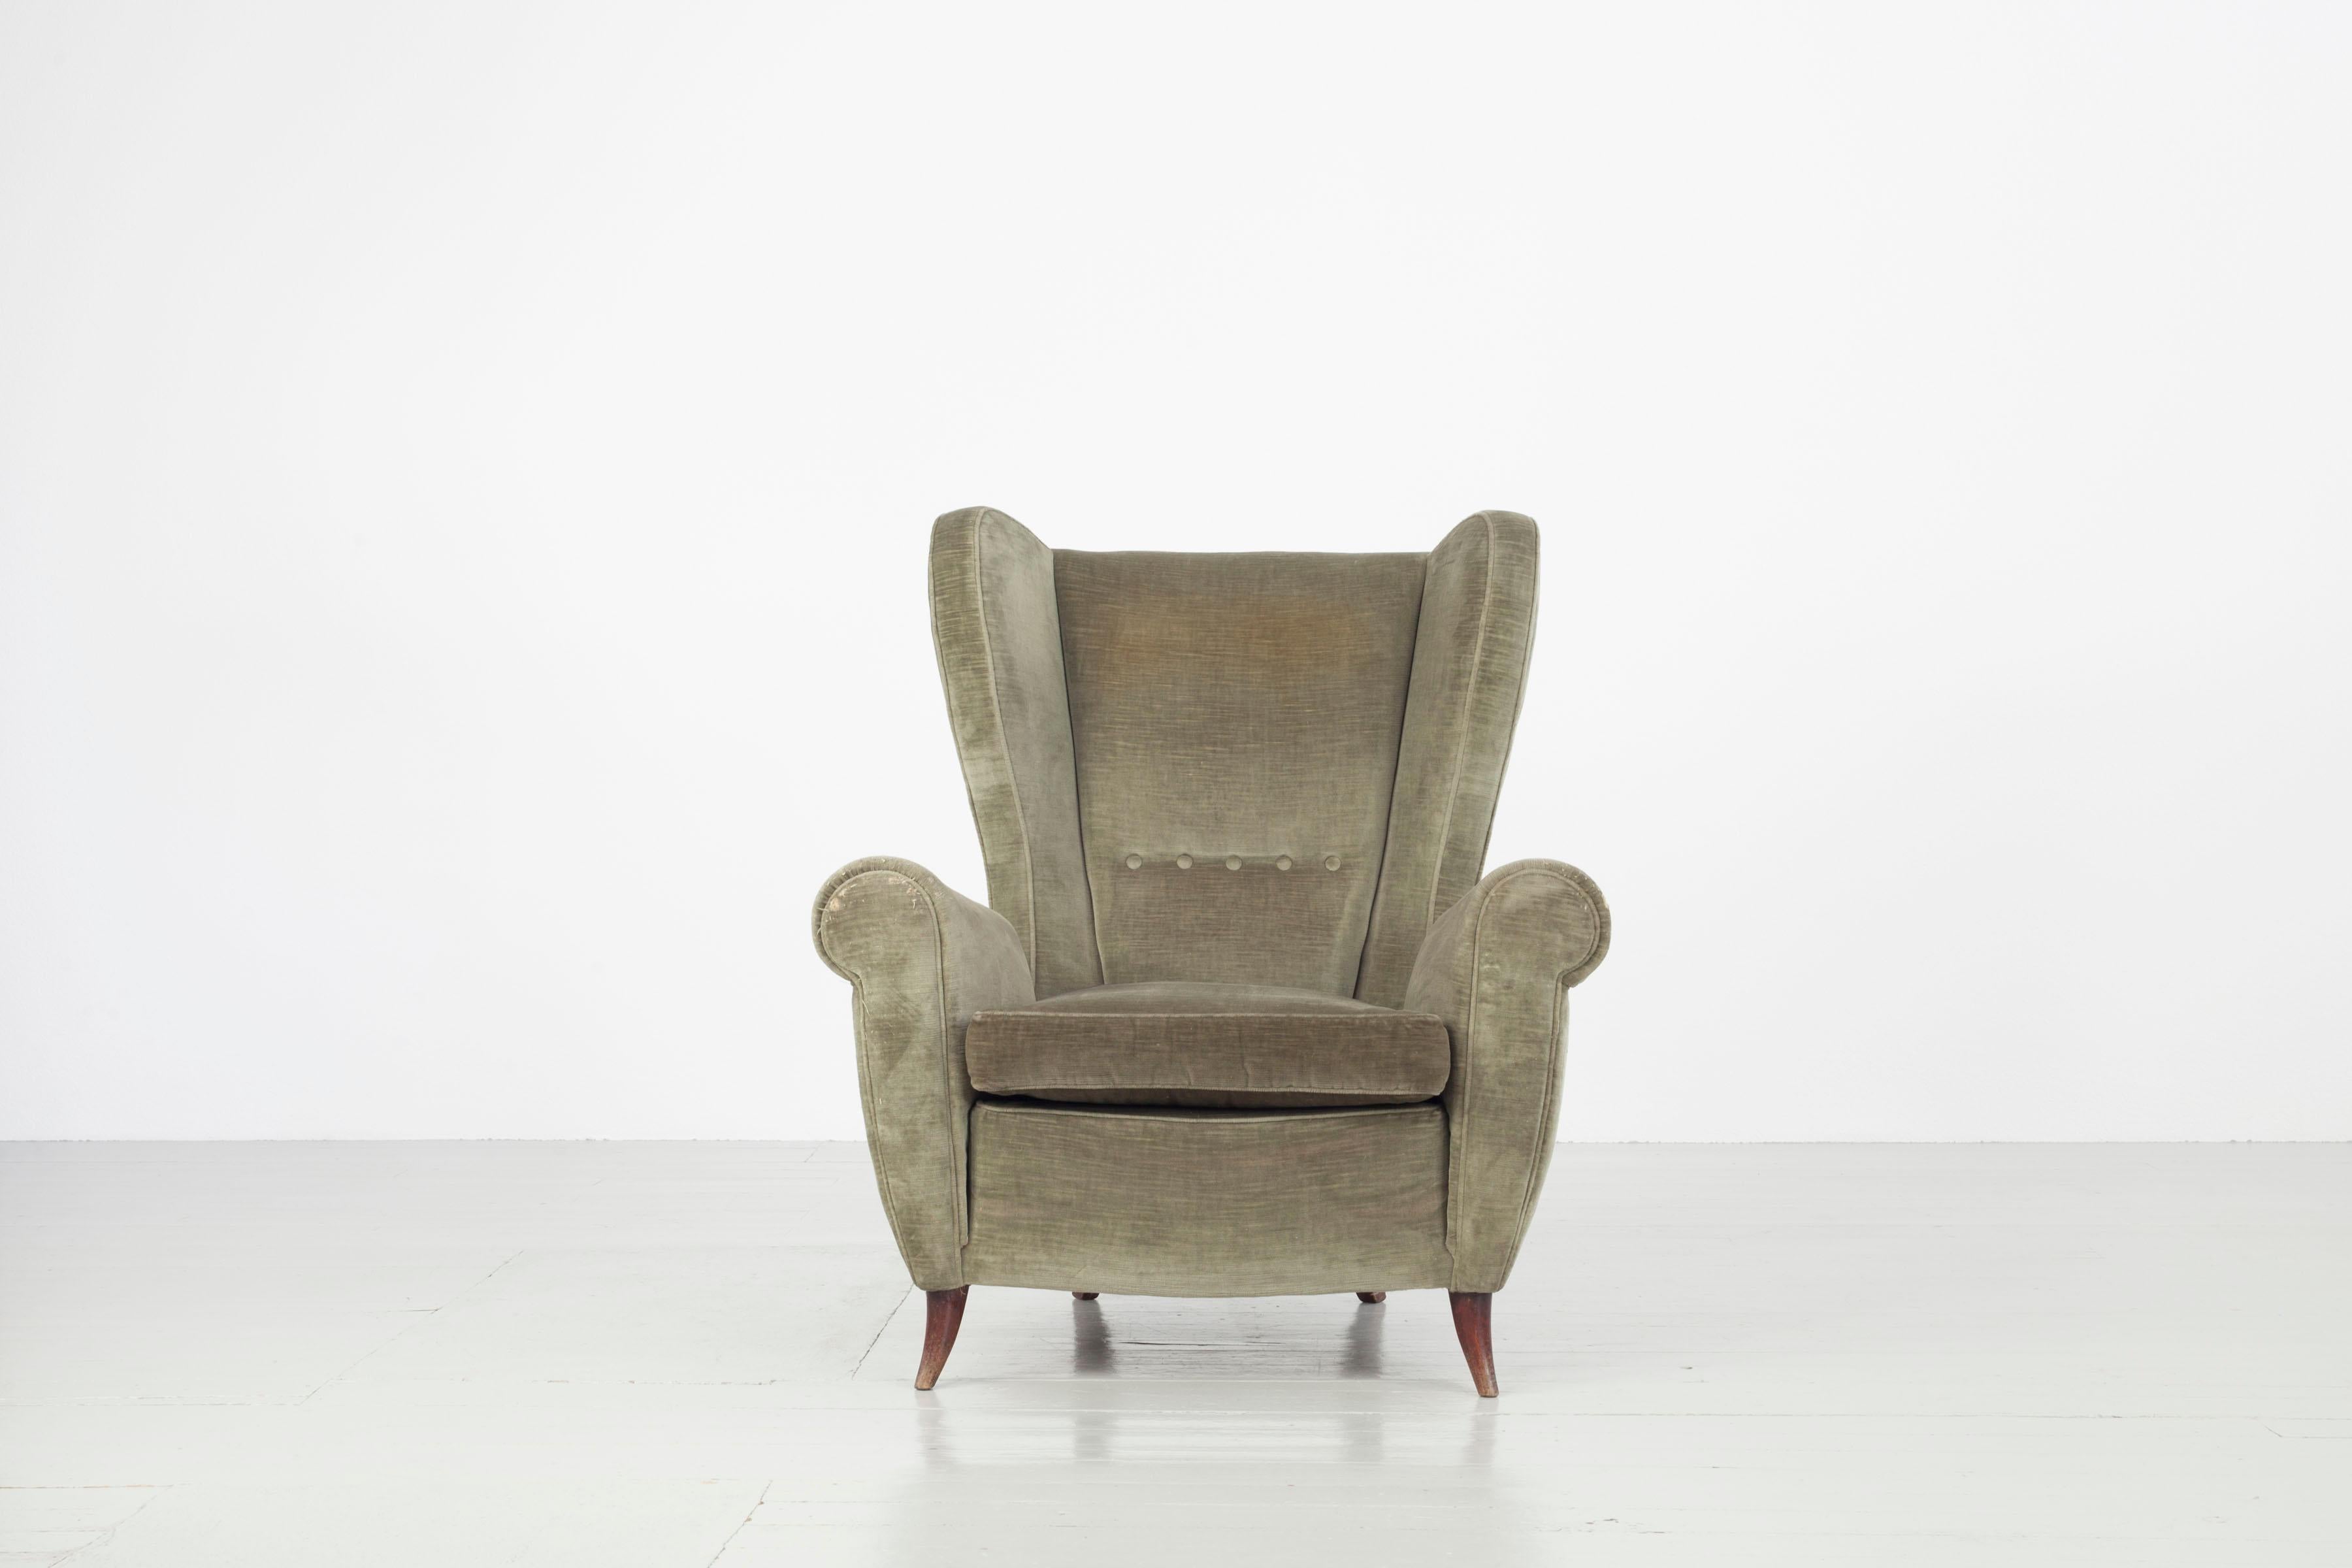 Satz von zwei Stühlen, Italien, 1950er Jahre. Die Stühle sind noch mit ihrem ursprünglichen Samtbezug versehen. Der Blick von der Seite erlaubt es, die Details des Designs und die eleganten Kurven der Verarbeitung wahrzunehmen. Diese Stühle können